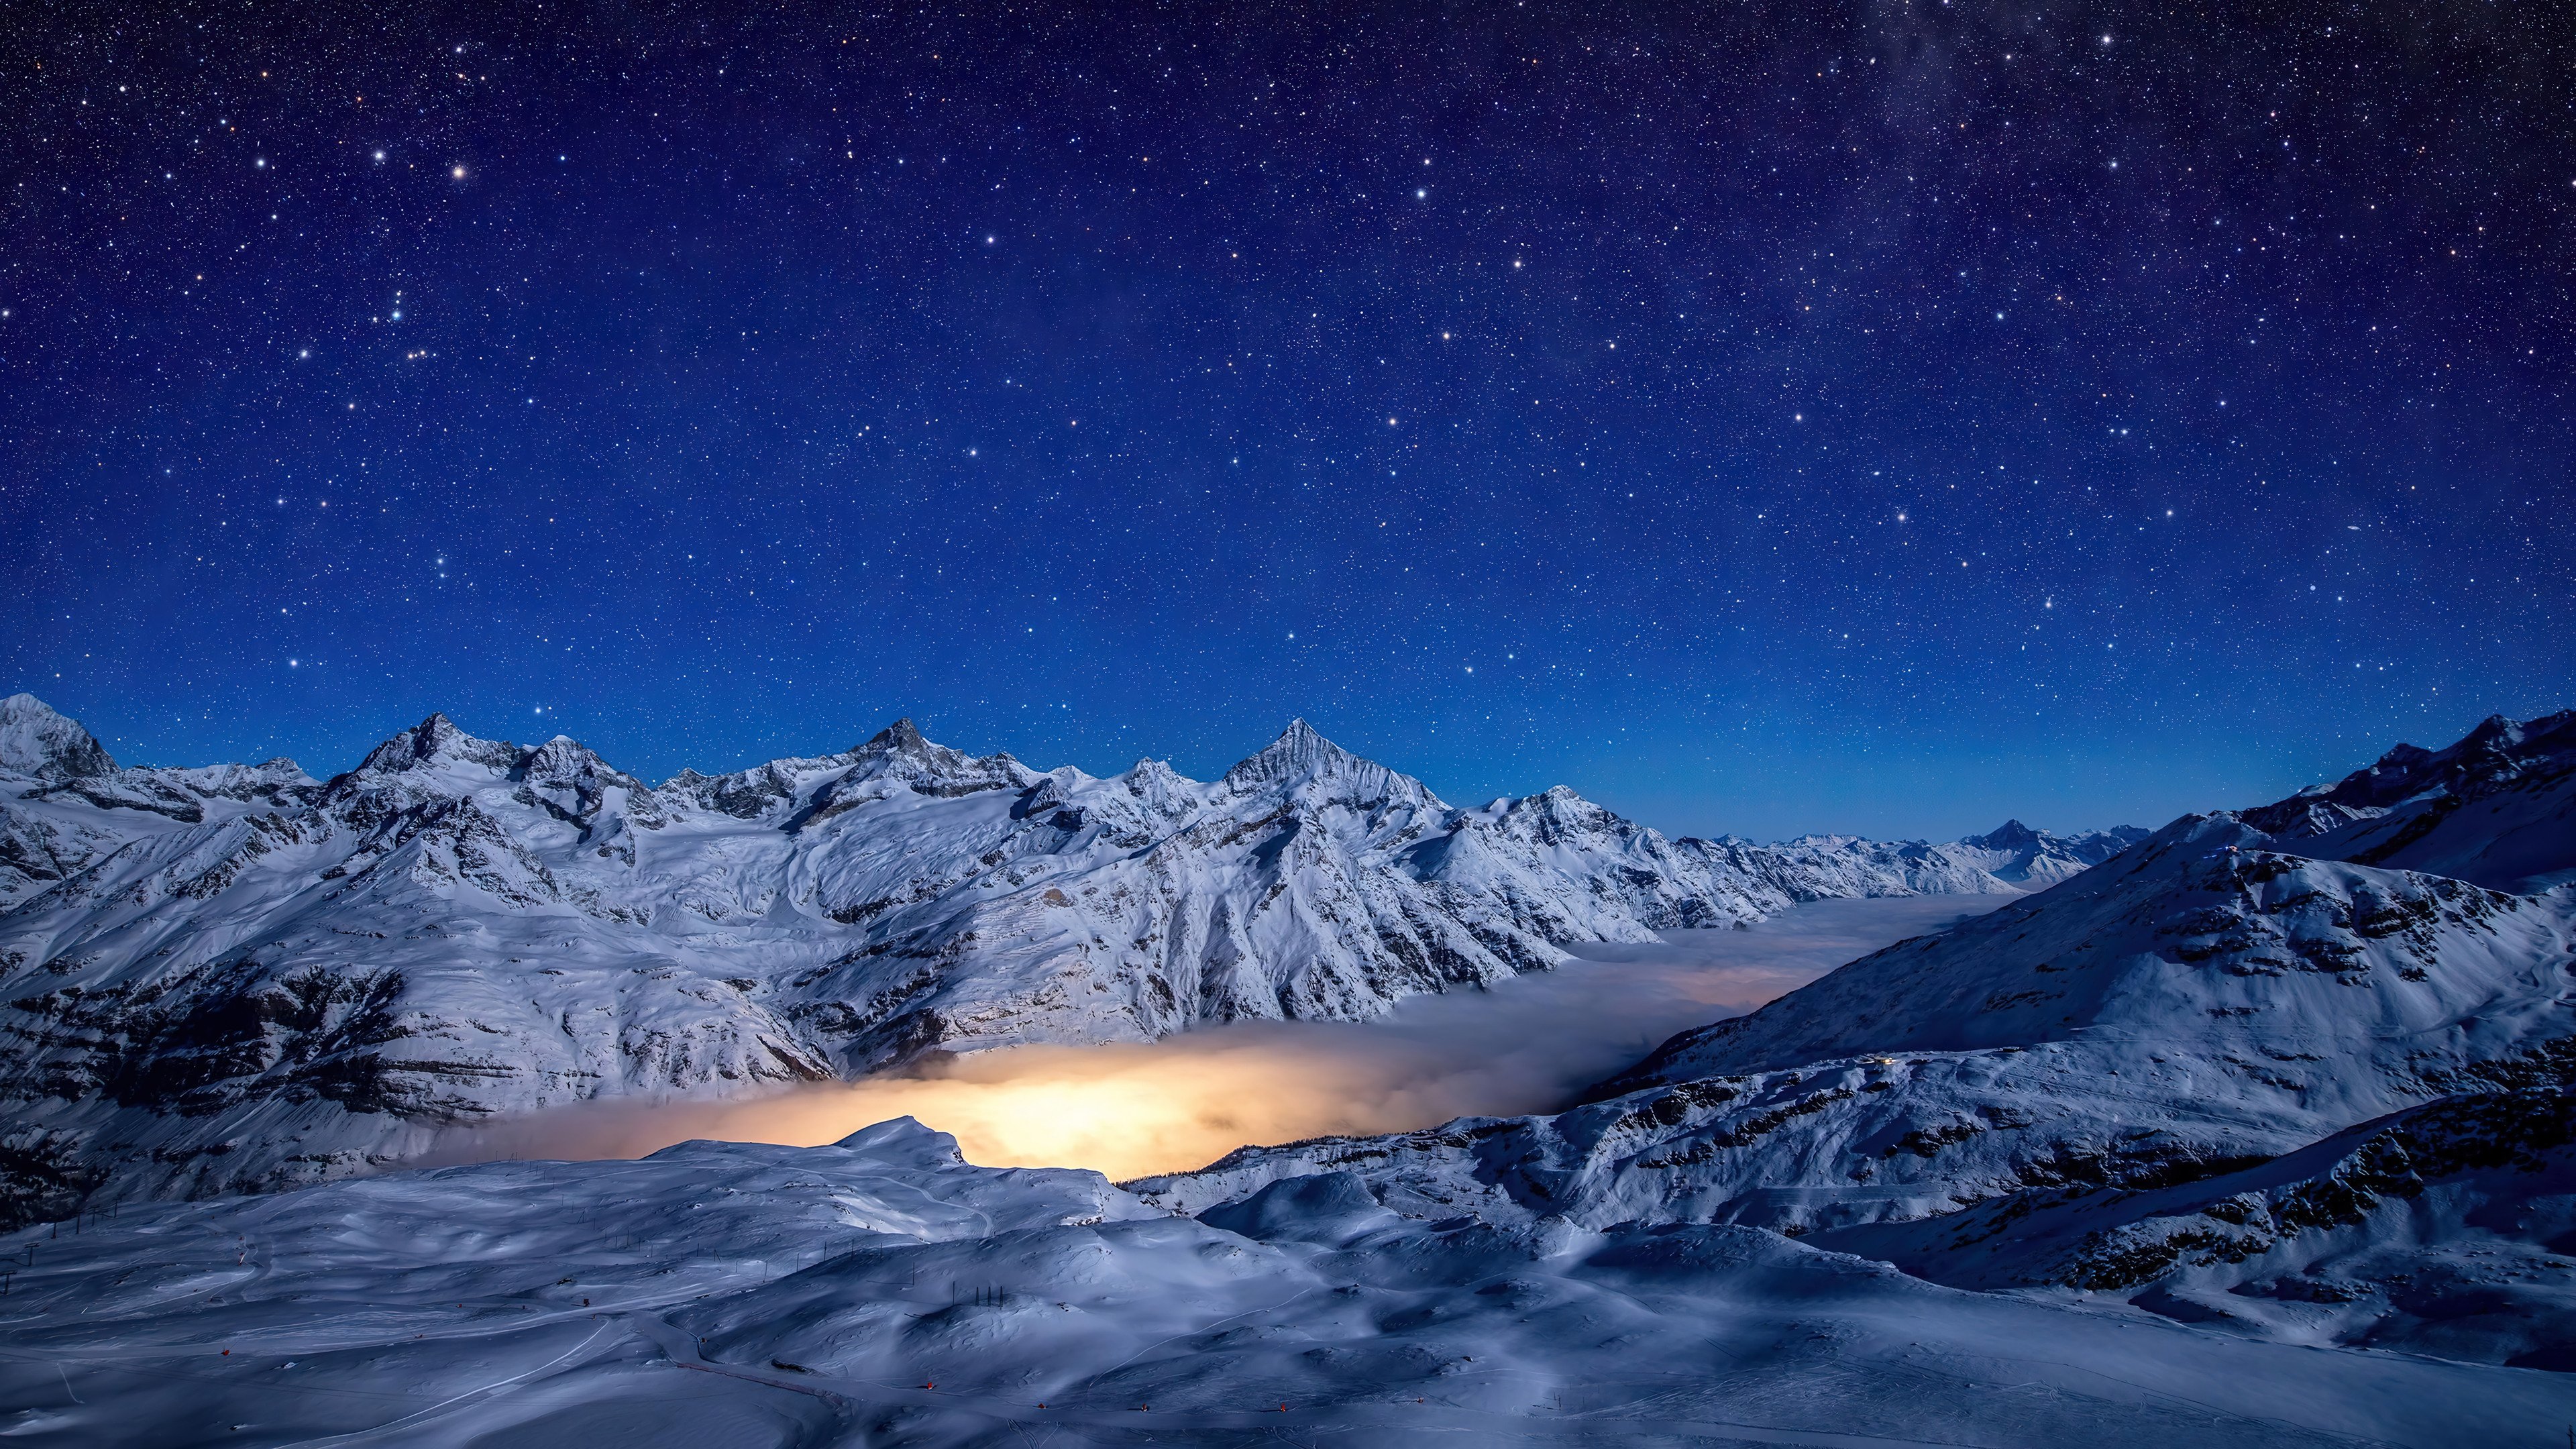 Fondos de pantalla Noche en las montañas durante el invierno